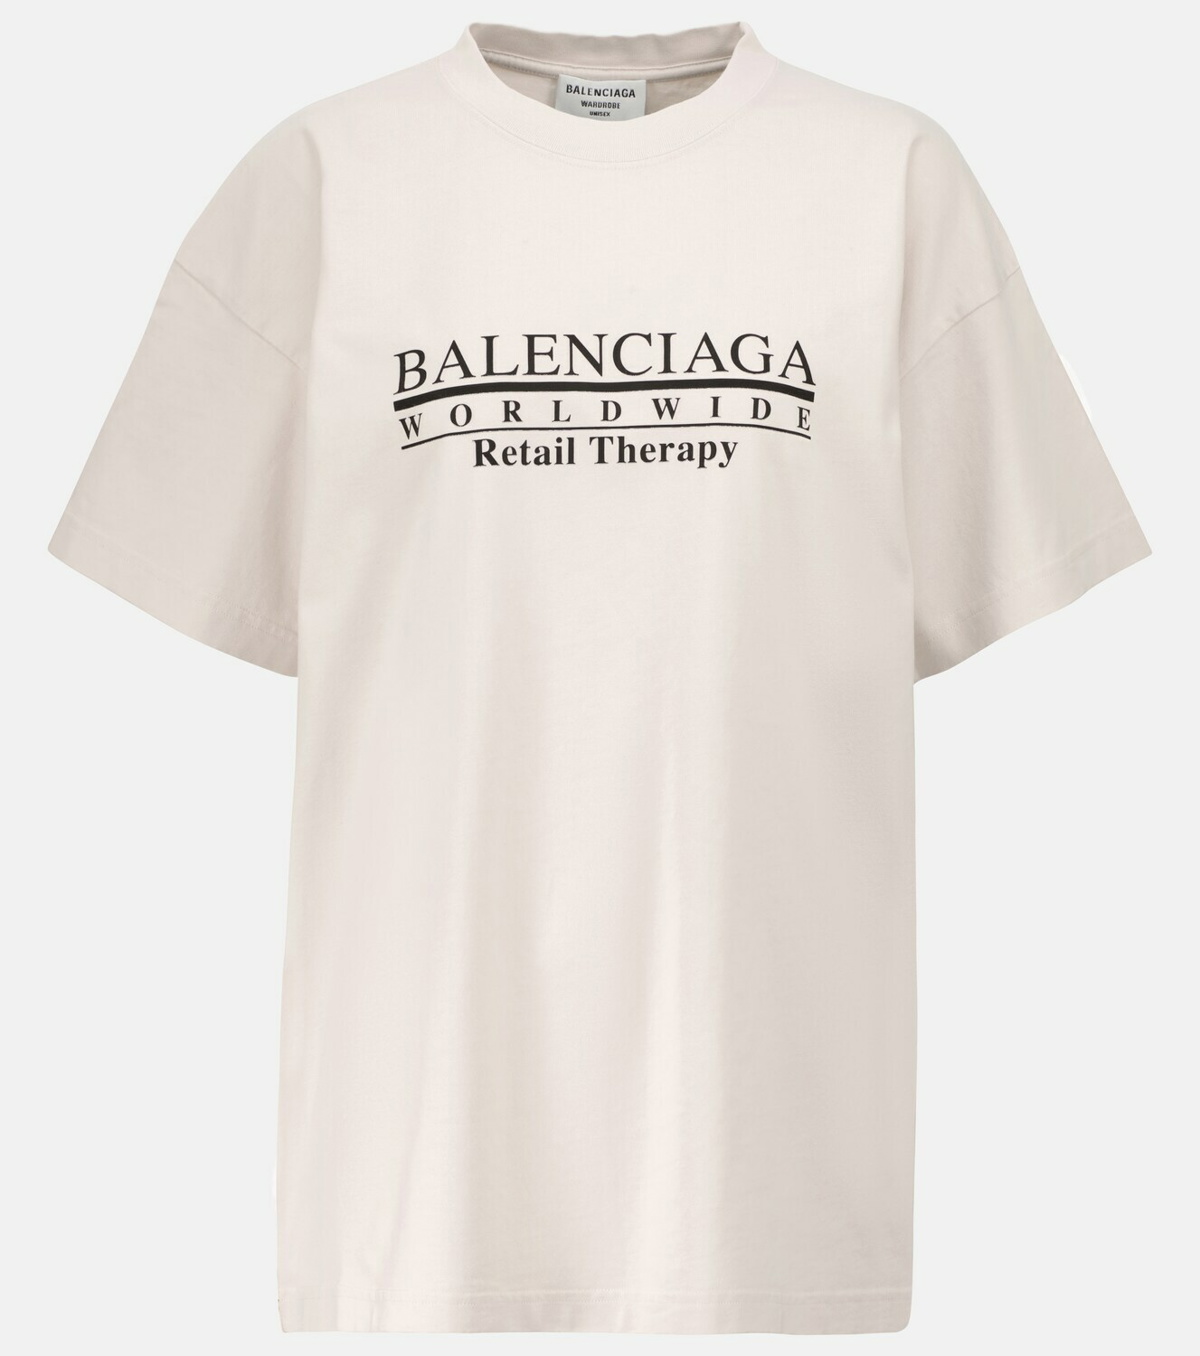 Balenciaga - Retail Therapy cotton jersey T-shirt Balenciaga